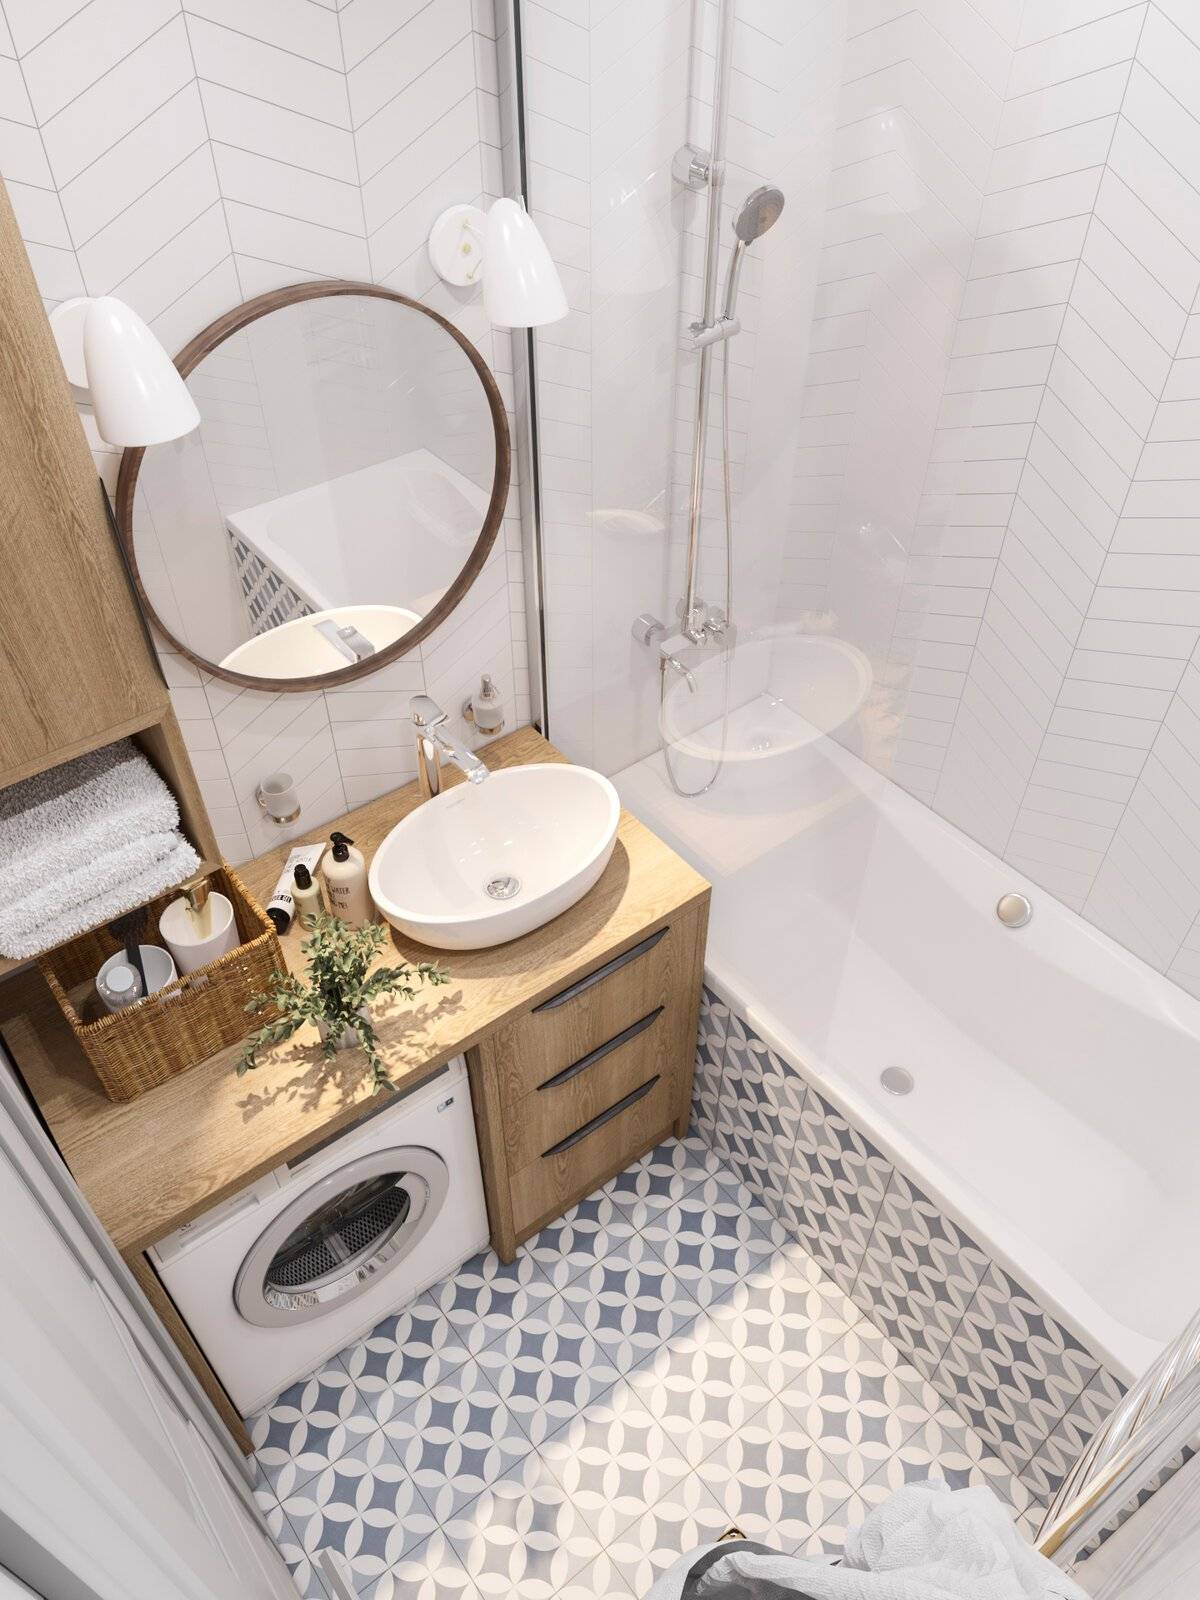 Дизайн маленькой ванной комнаты - 90 фото идеальных сочетаний и вариантов украшения ванной